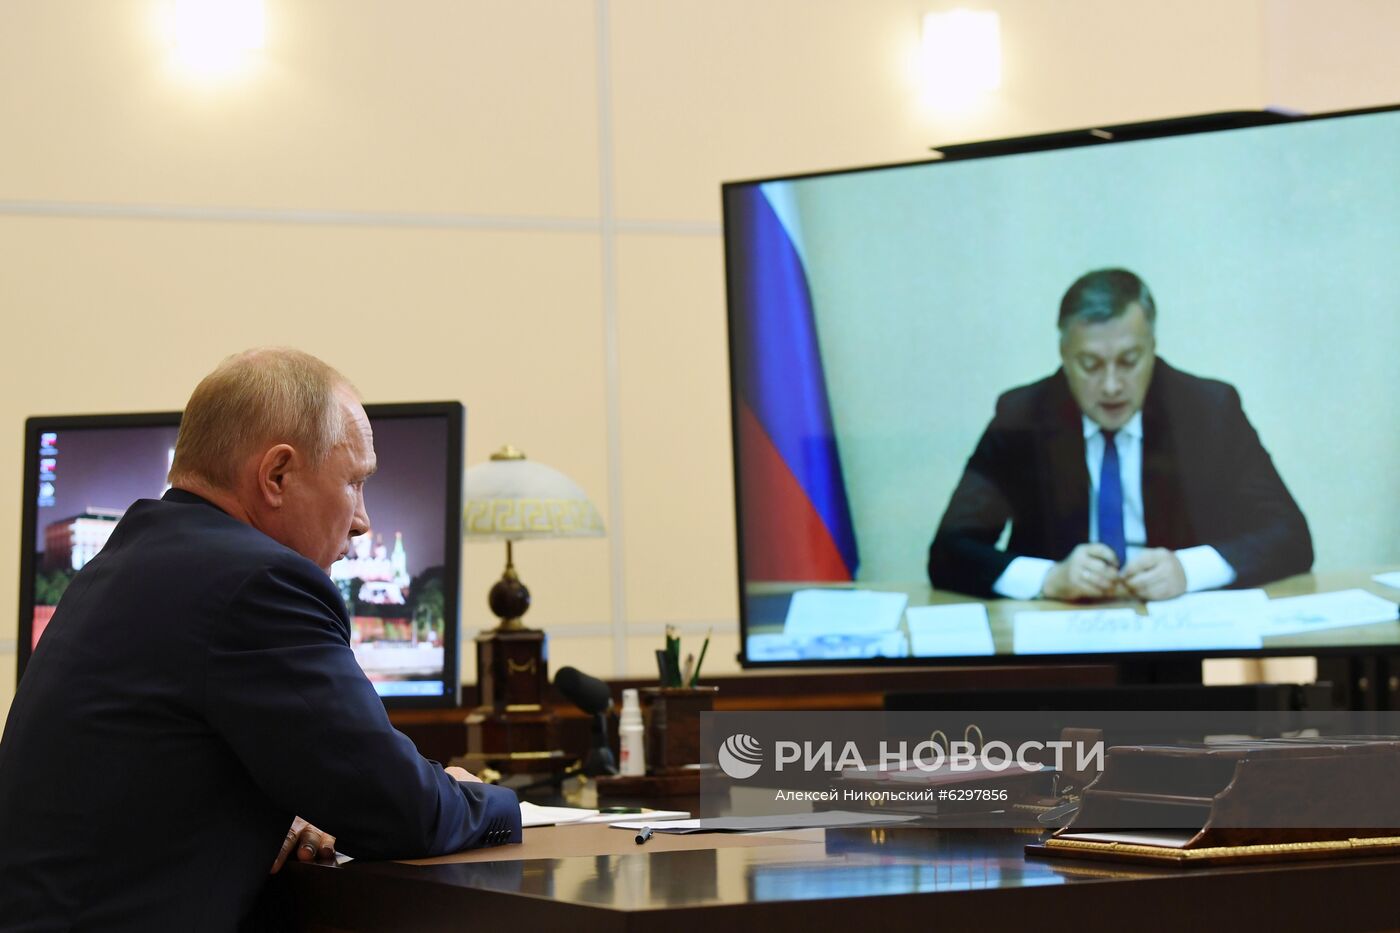 Президент РФ В. Путин провел встречу с врио губернатора Иркутской области И. Кобзевым